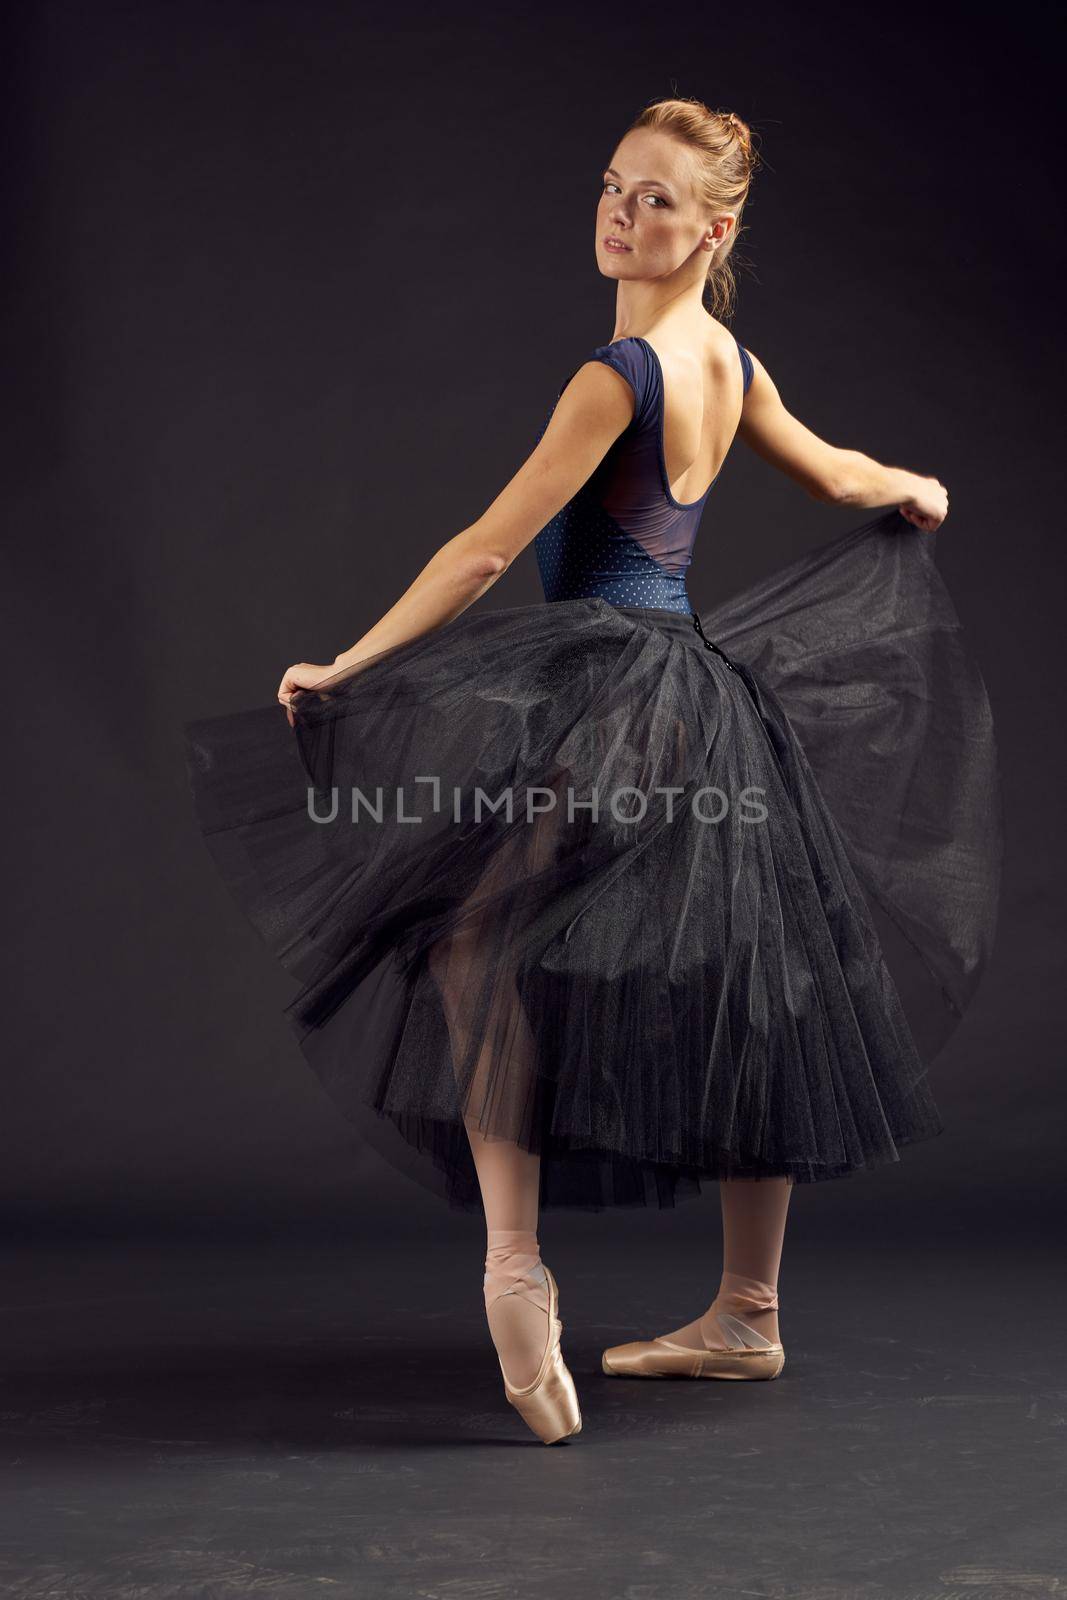 woman dancer elegant style art balance artist dark background by Vichizh